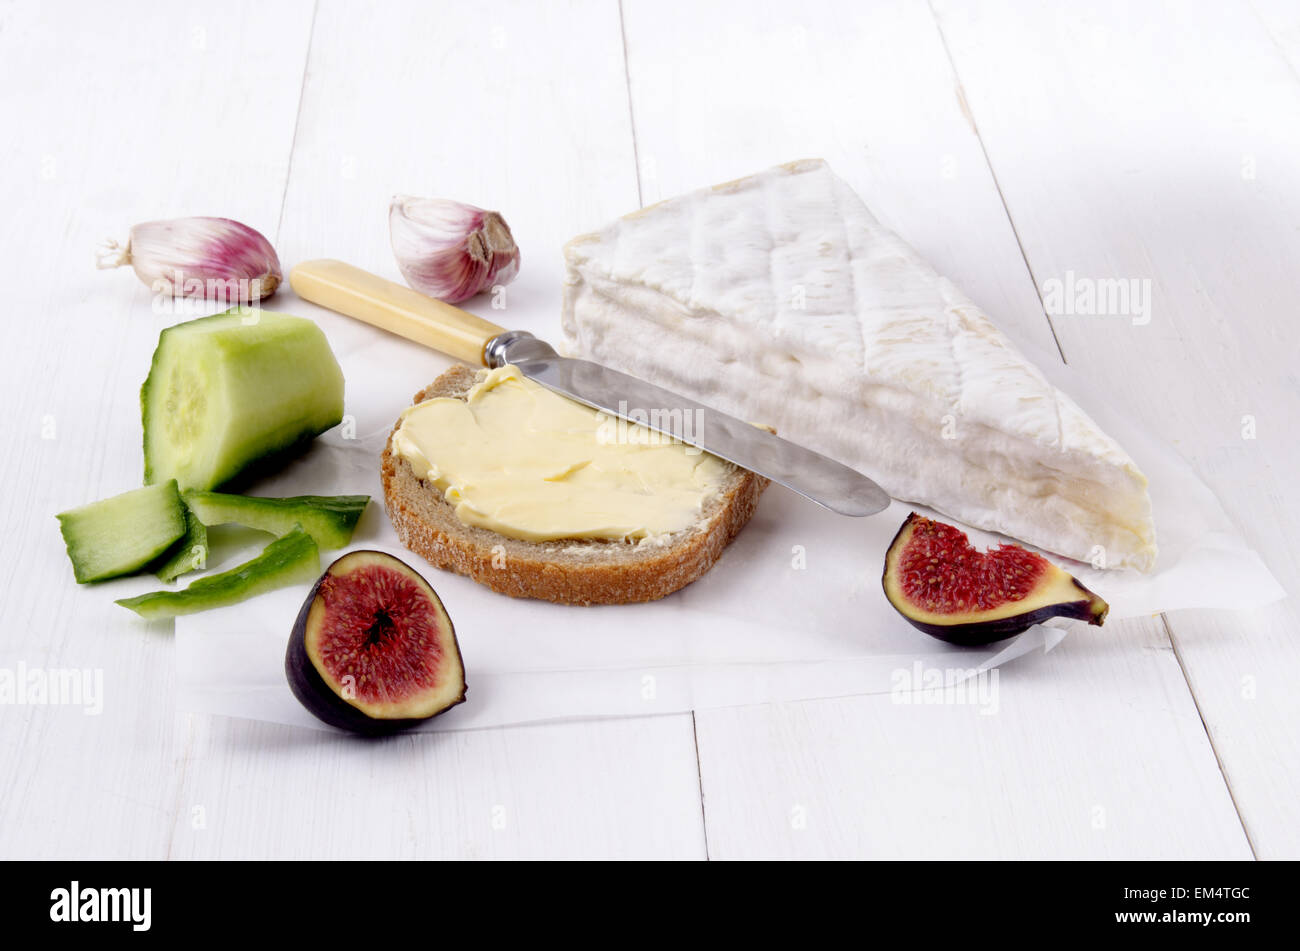 Il francese camembert, fetta di pane con burro, fig, aglio, coltello e pelate il cetriolo su carta bianca Foto Stock